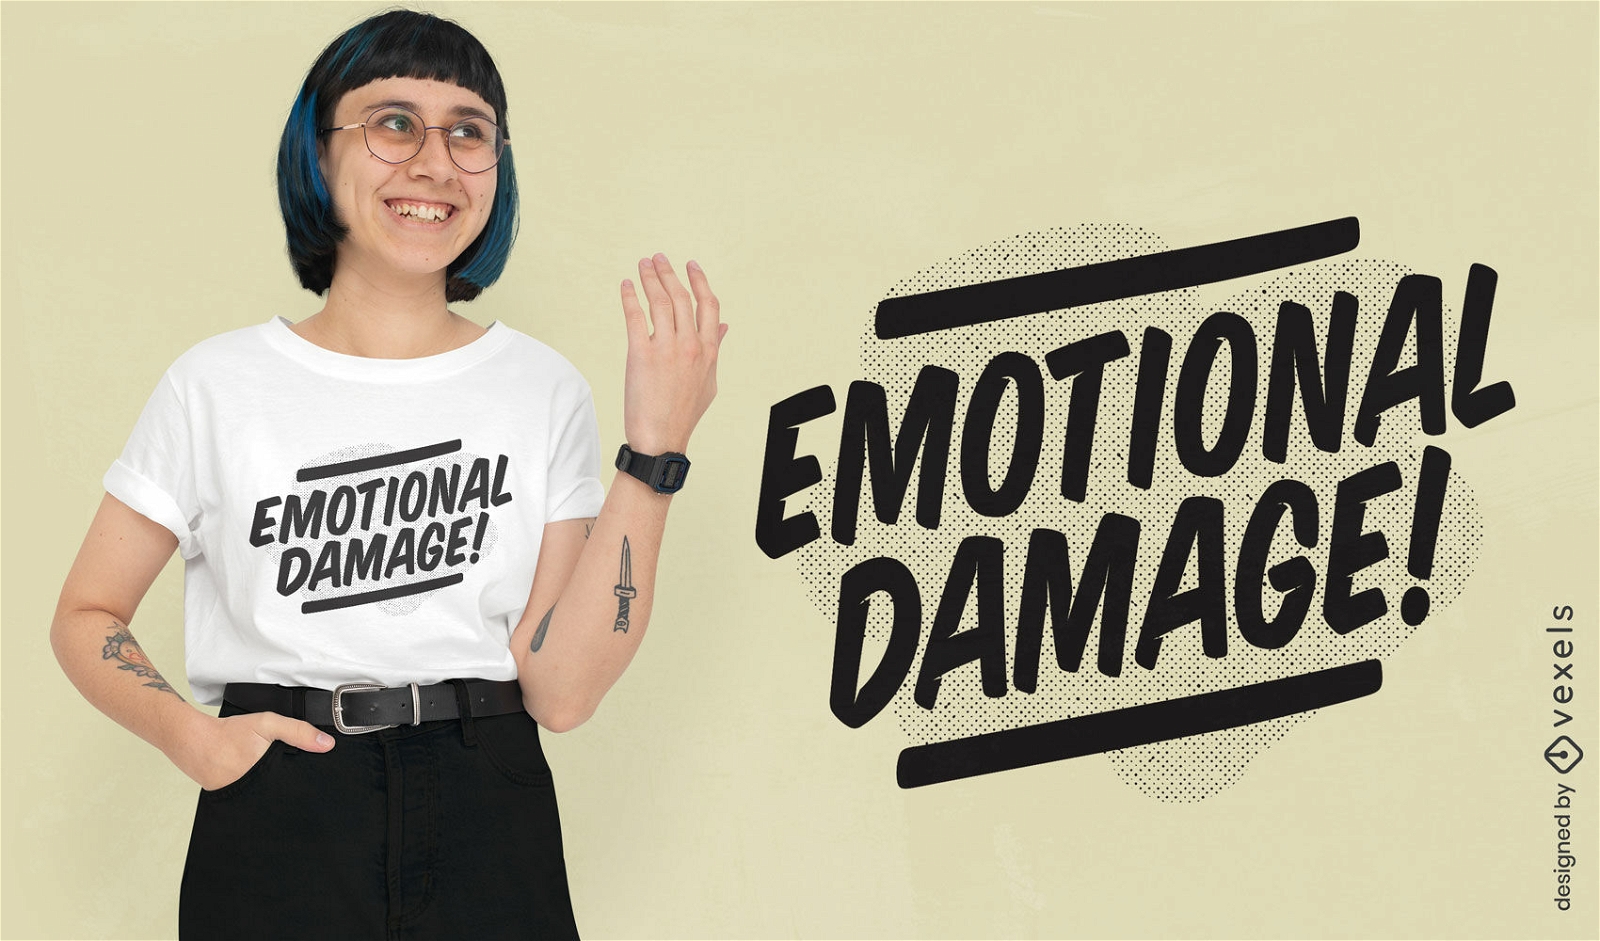 Zitat-T-Shirt-Design f?r emotionalen Schaden